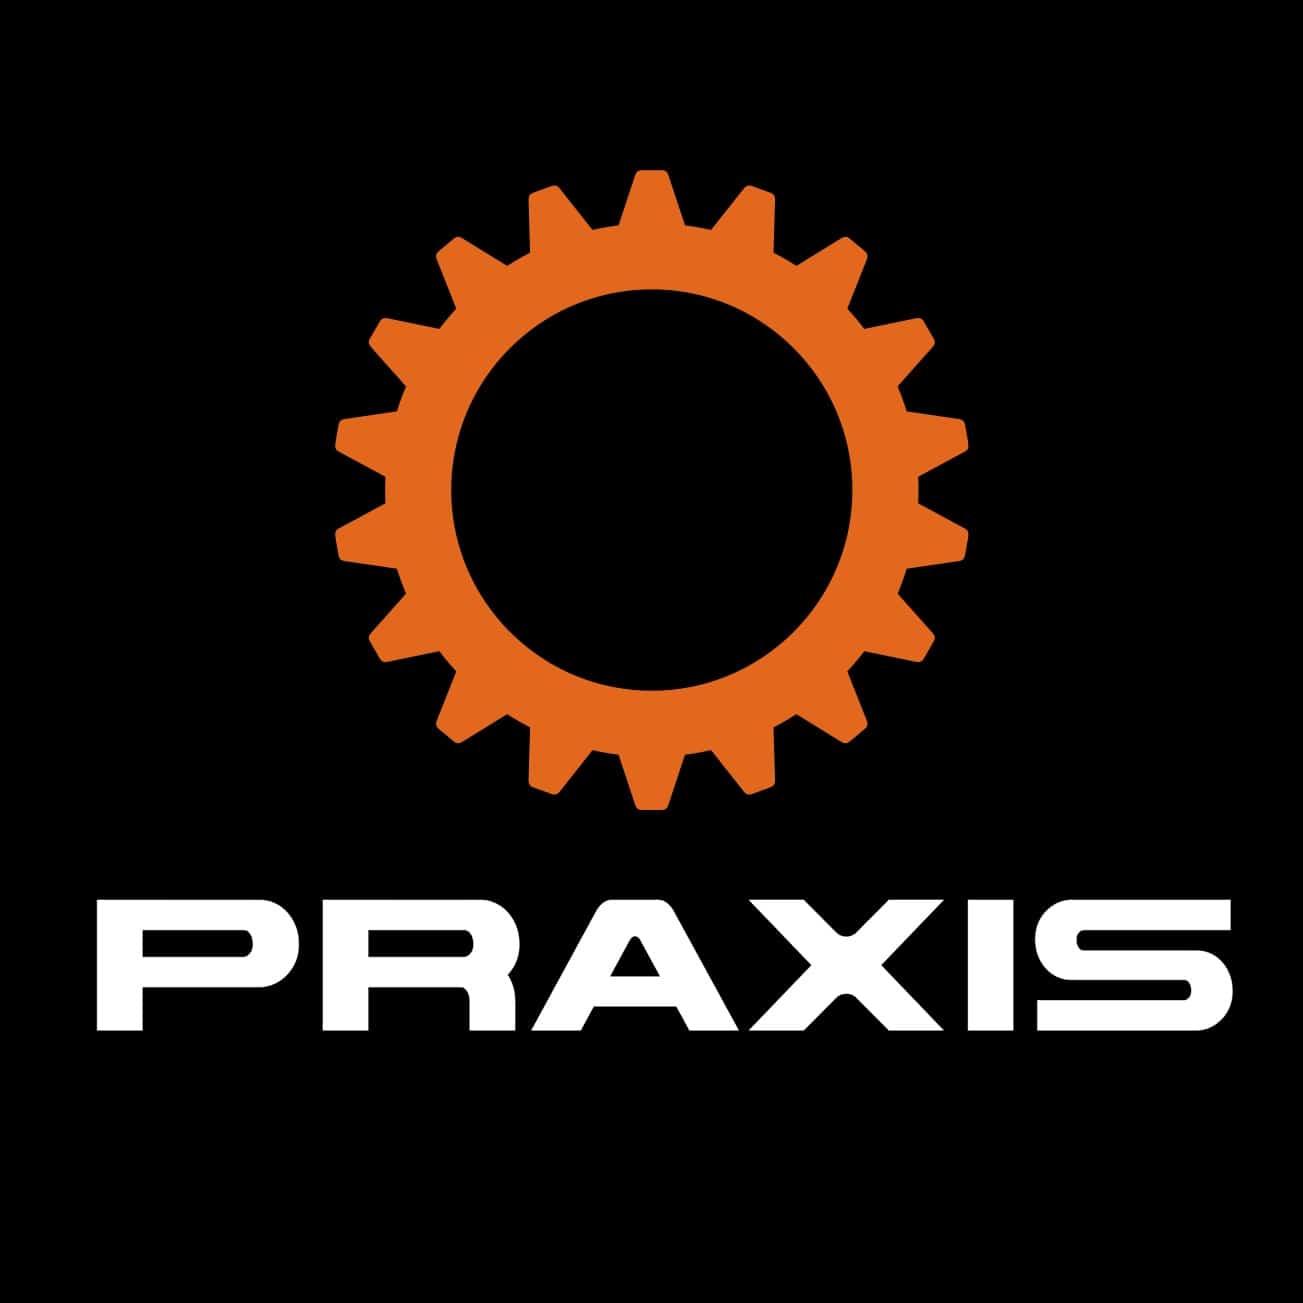 (c) Praxiscycles.com